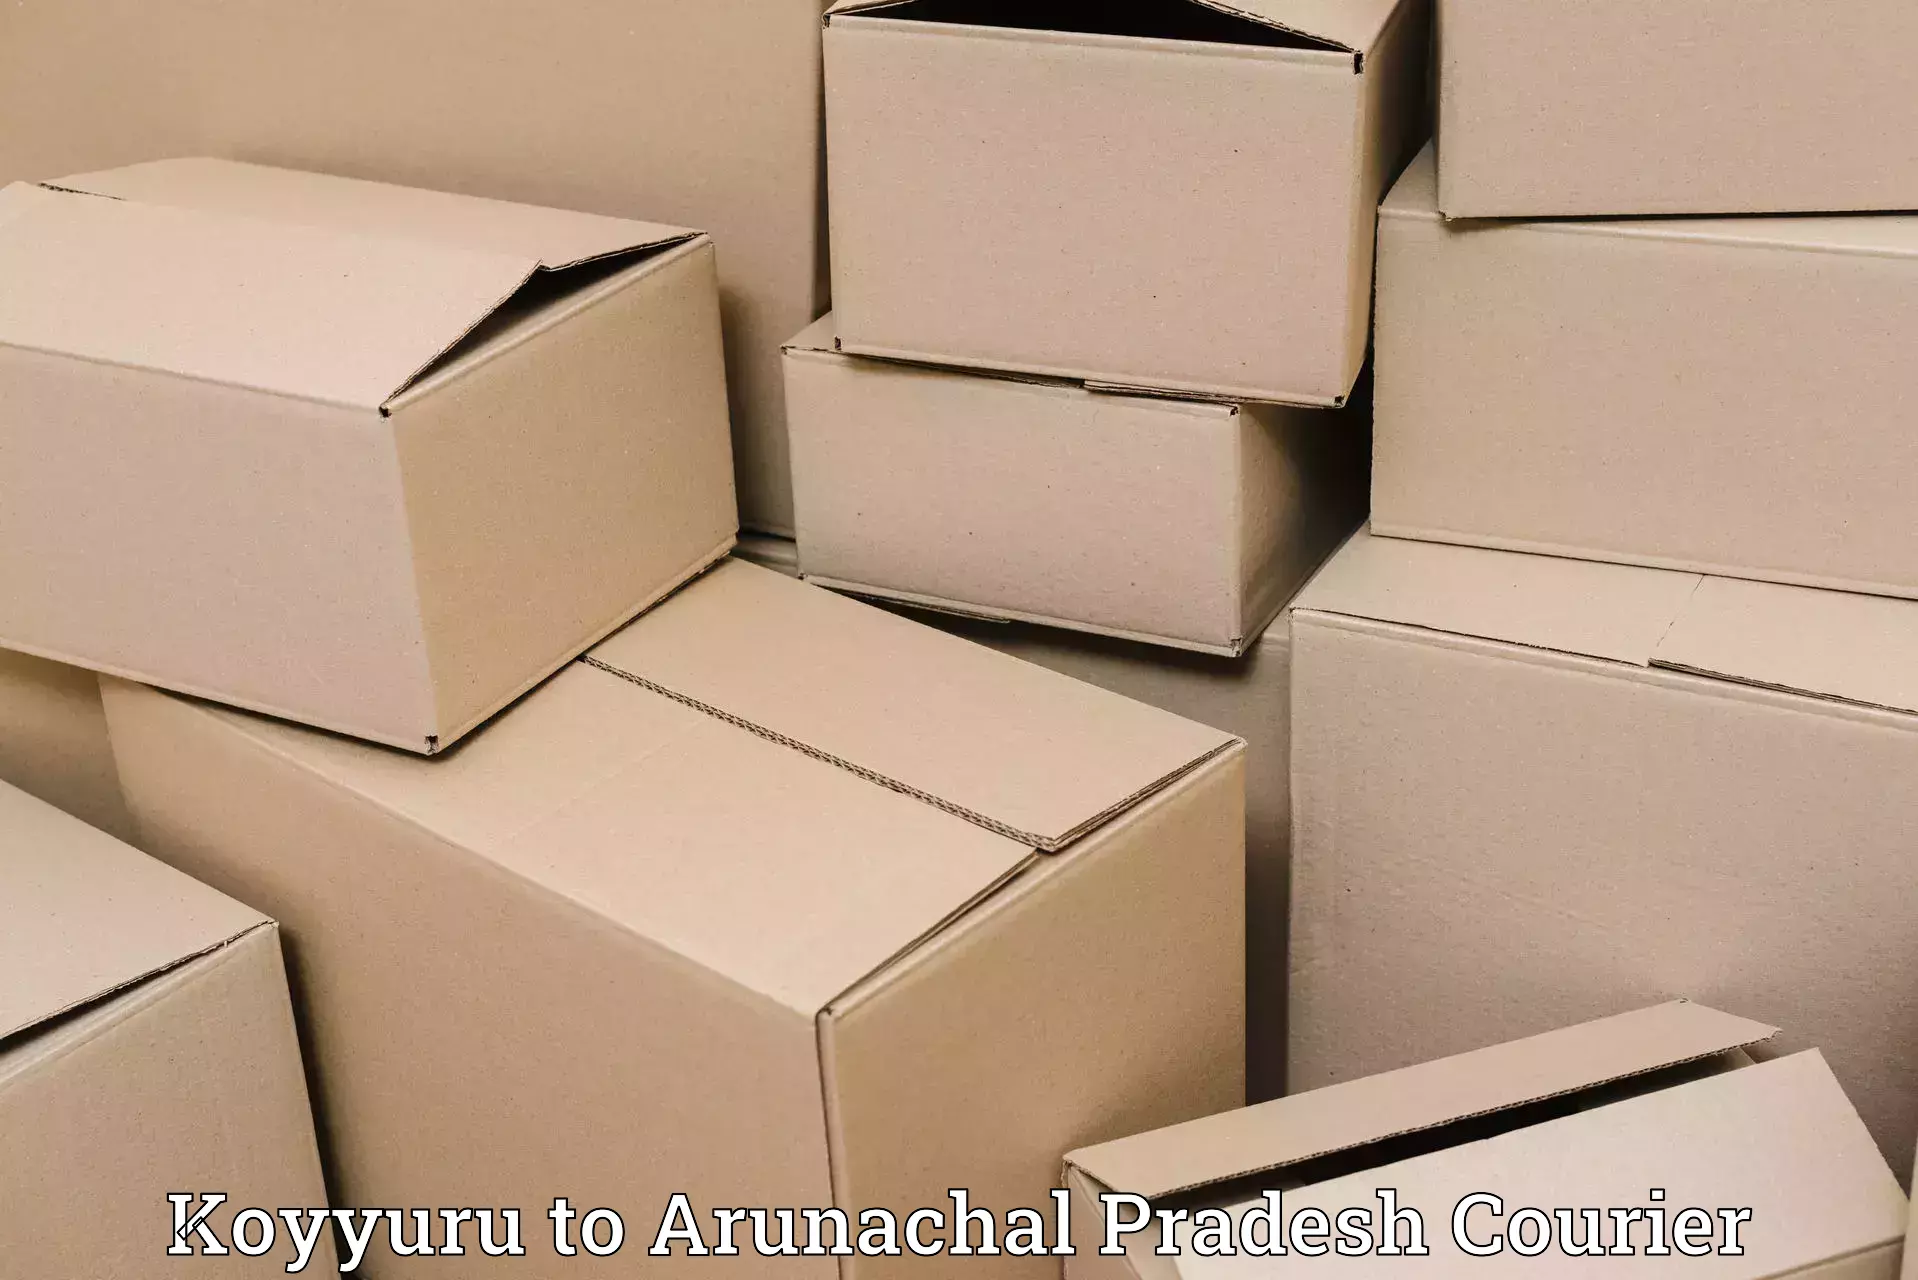 Efficient parcel tracking Koyyuru to Tawang